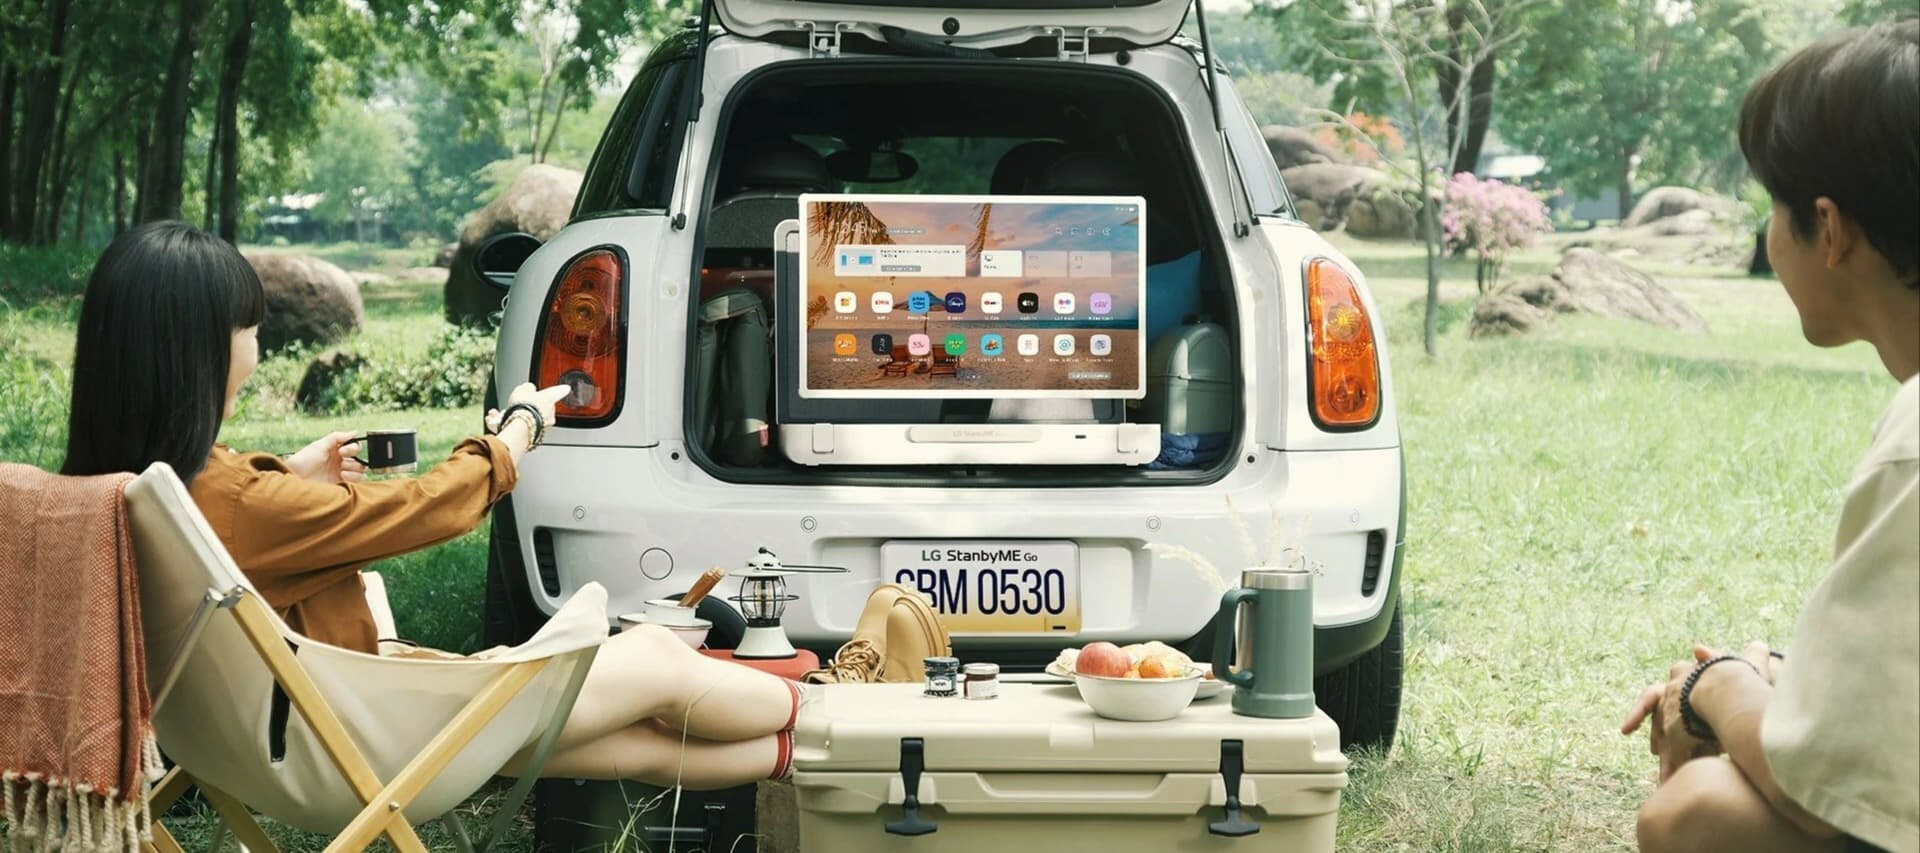 Фото новости: "LG представила портативный телевизор с сенсорным экраном"